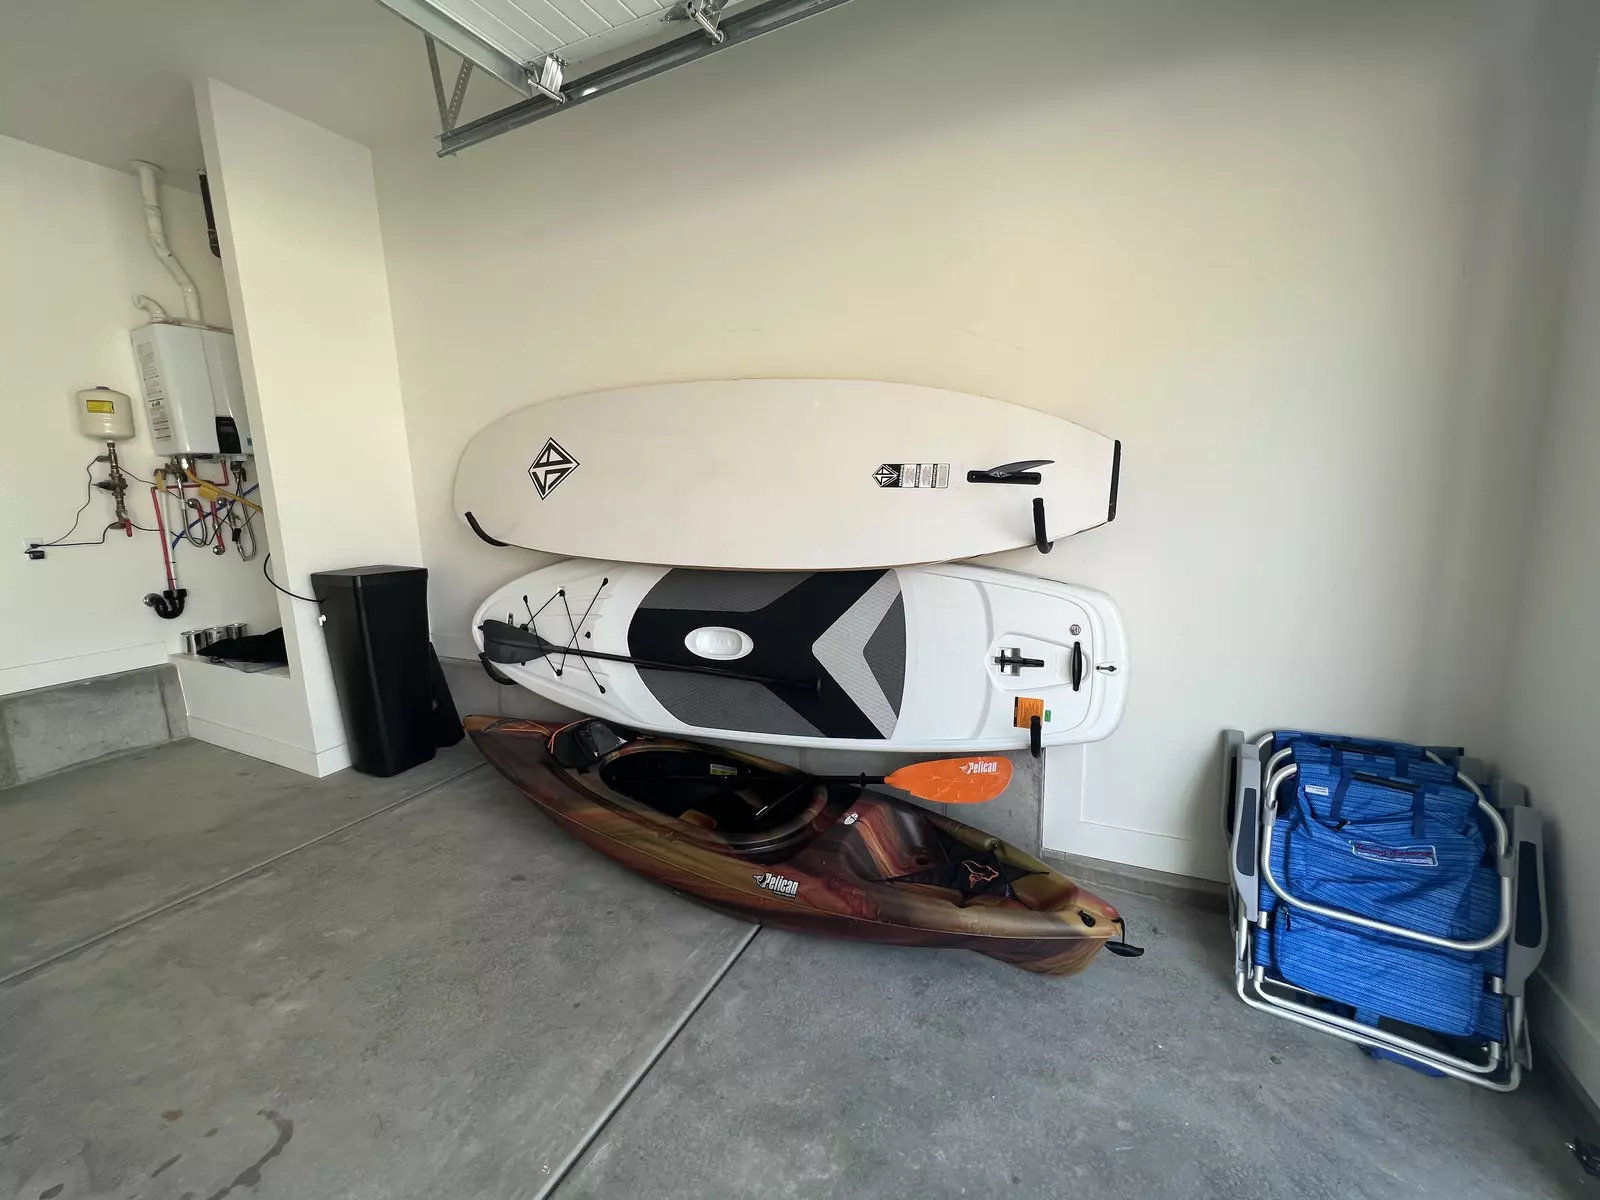 2 Paddleboards and 1 Kayak